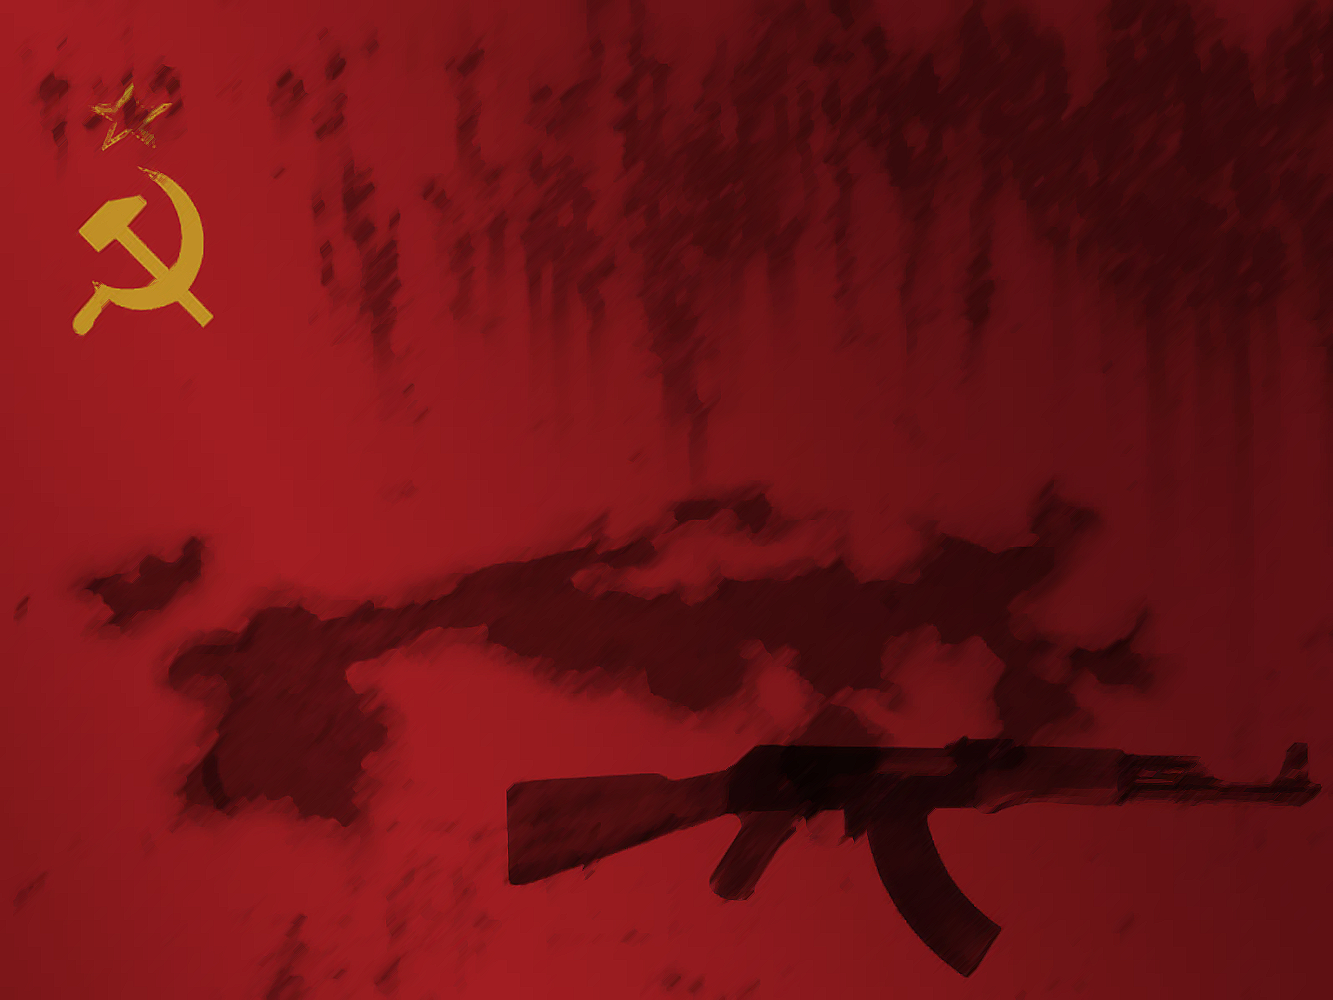 General 1333x1000 weapon red background USSR AK-47 red hammer and sickle communism machine gun